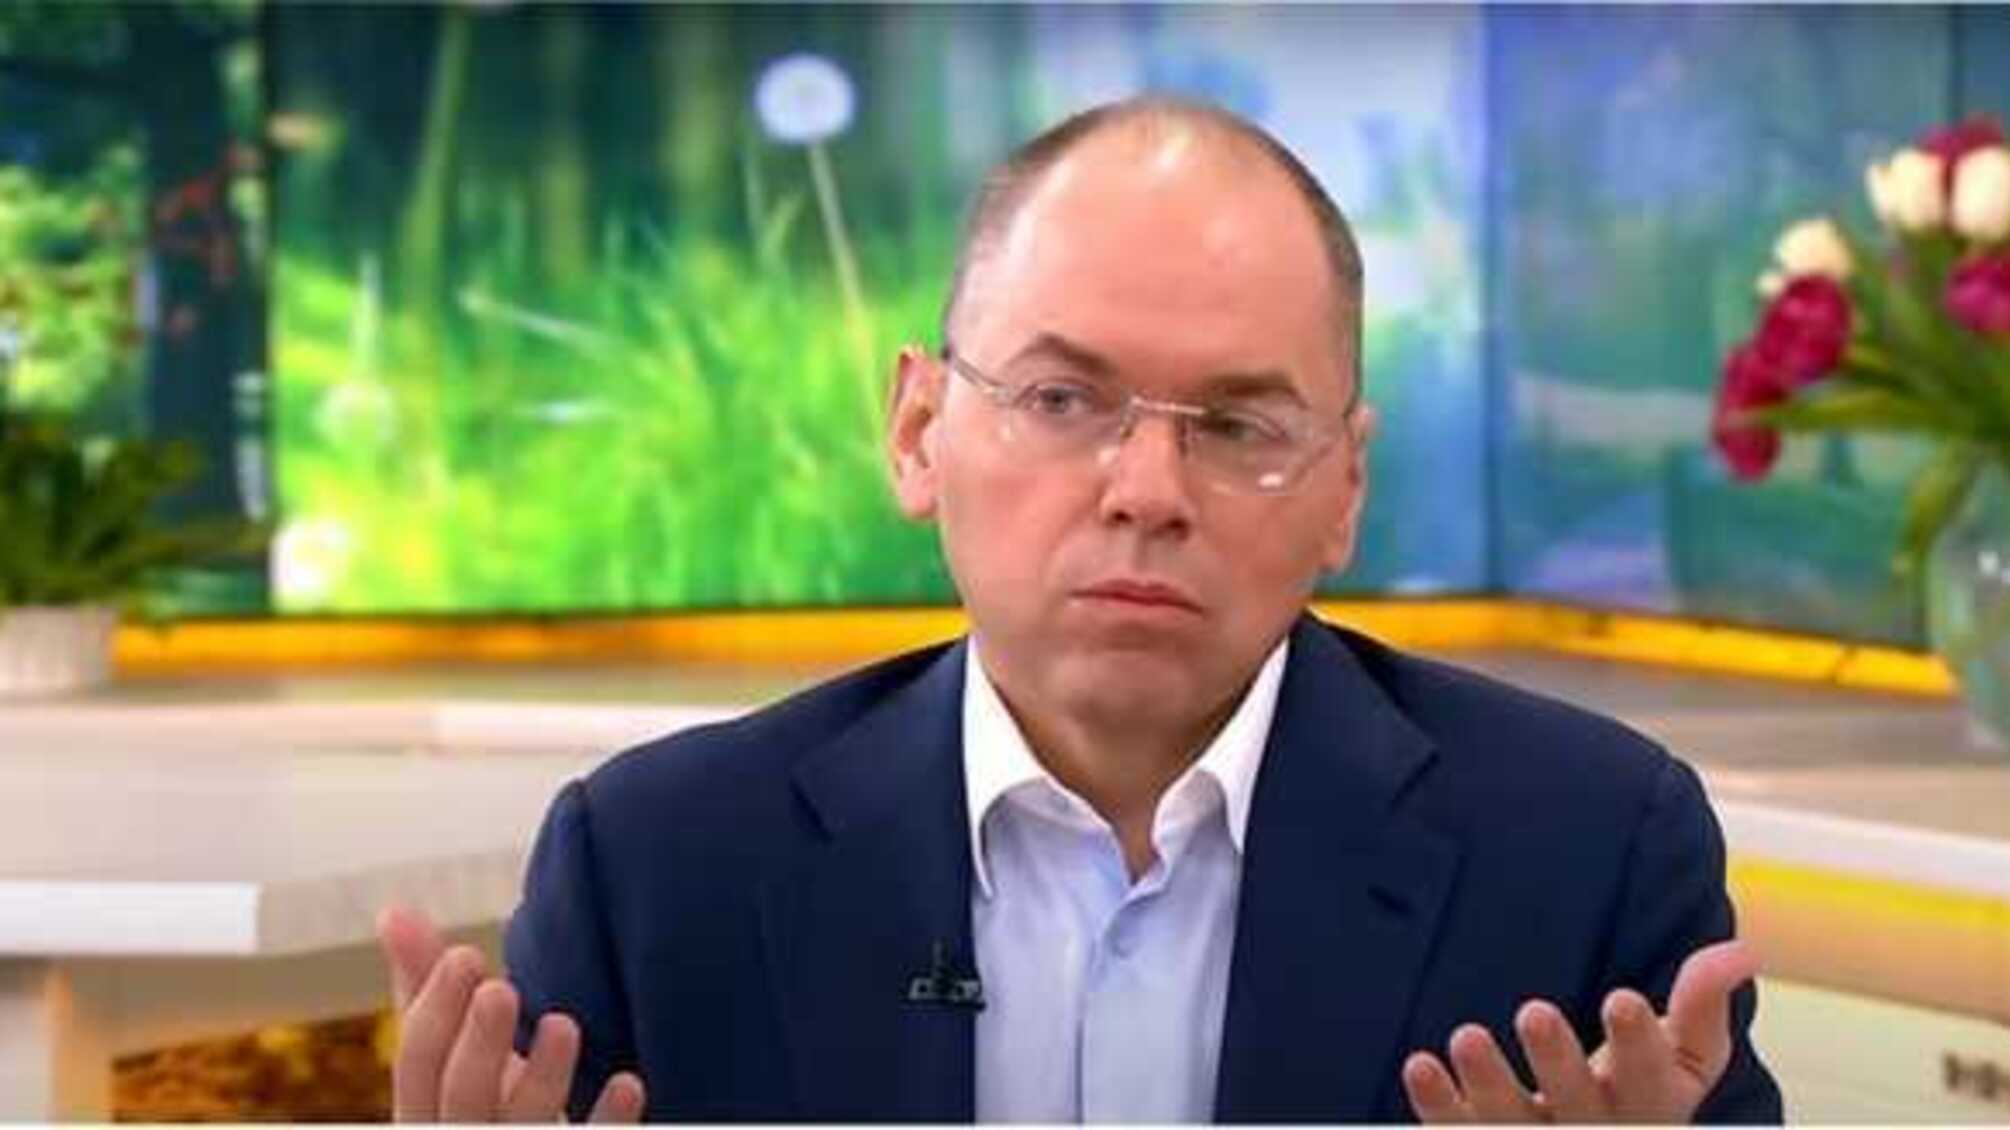 Степанов объявил о масштабной закупке новых украинских аппаратов ИВЛ для больниц